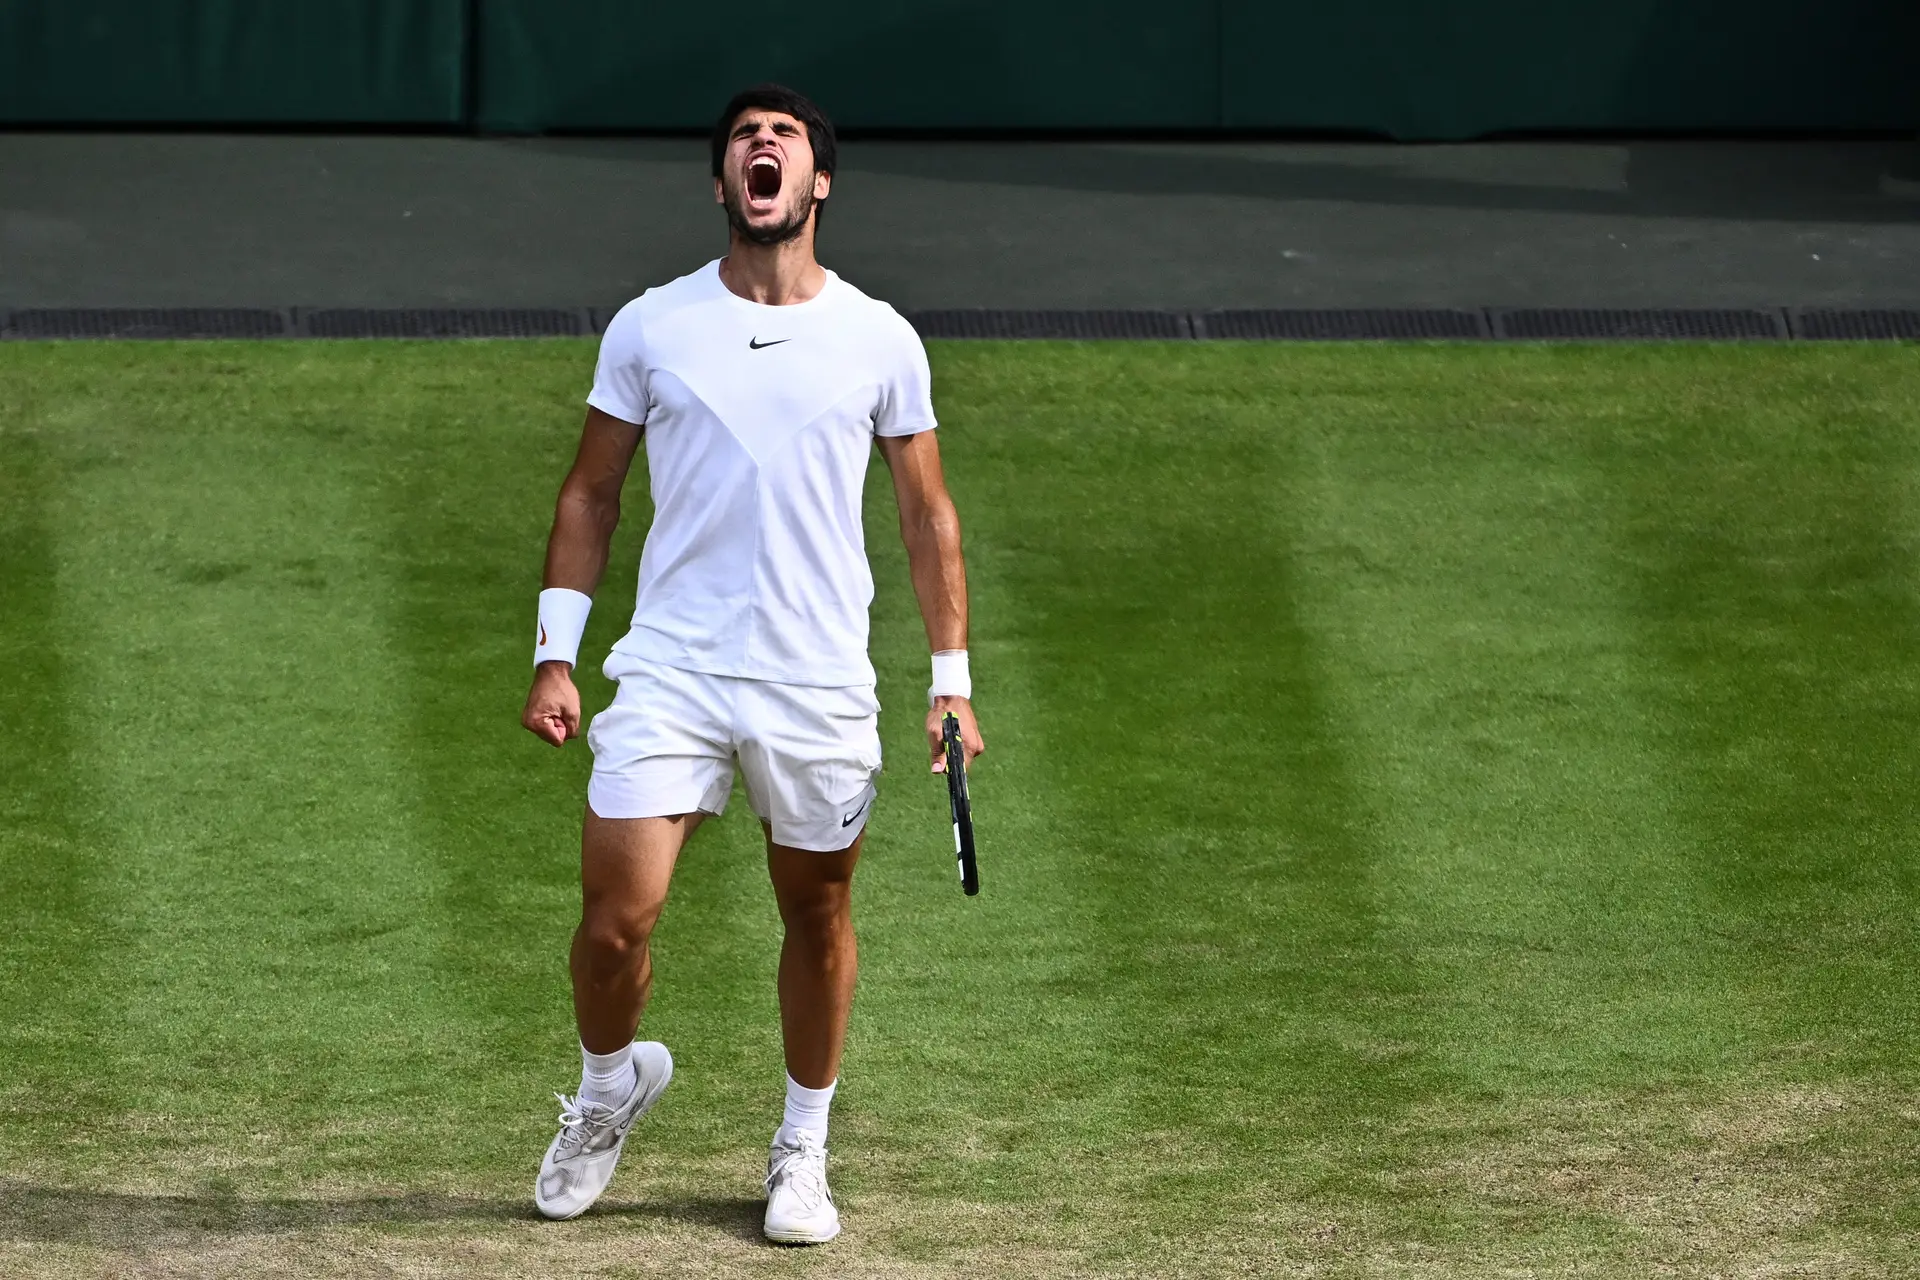 Carlos Alcaraz e Novak Djokovic vencem na estreia em Roland Garros, tênis